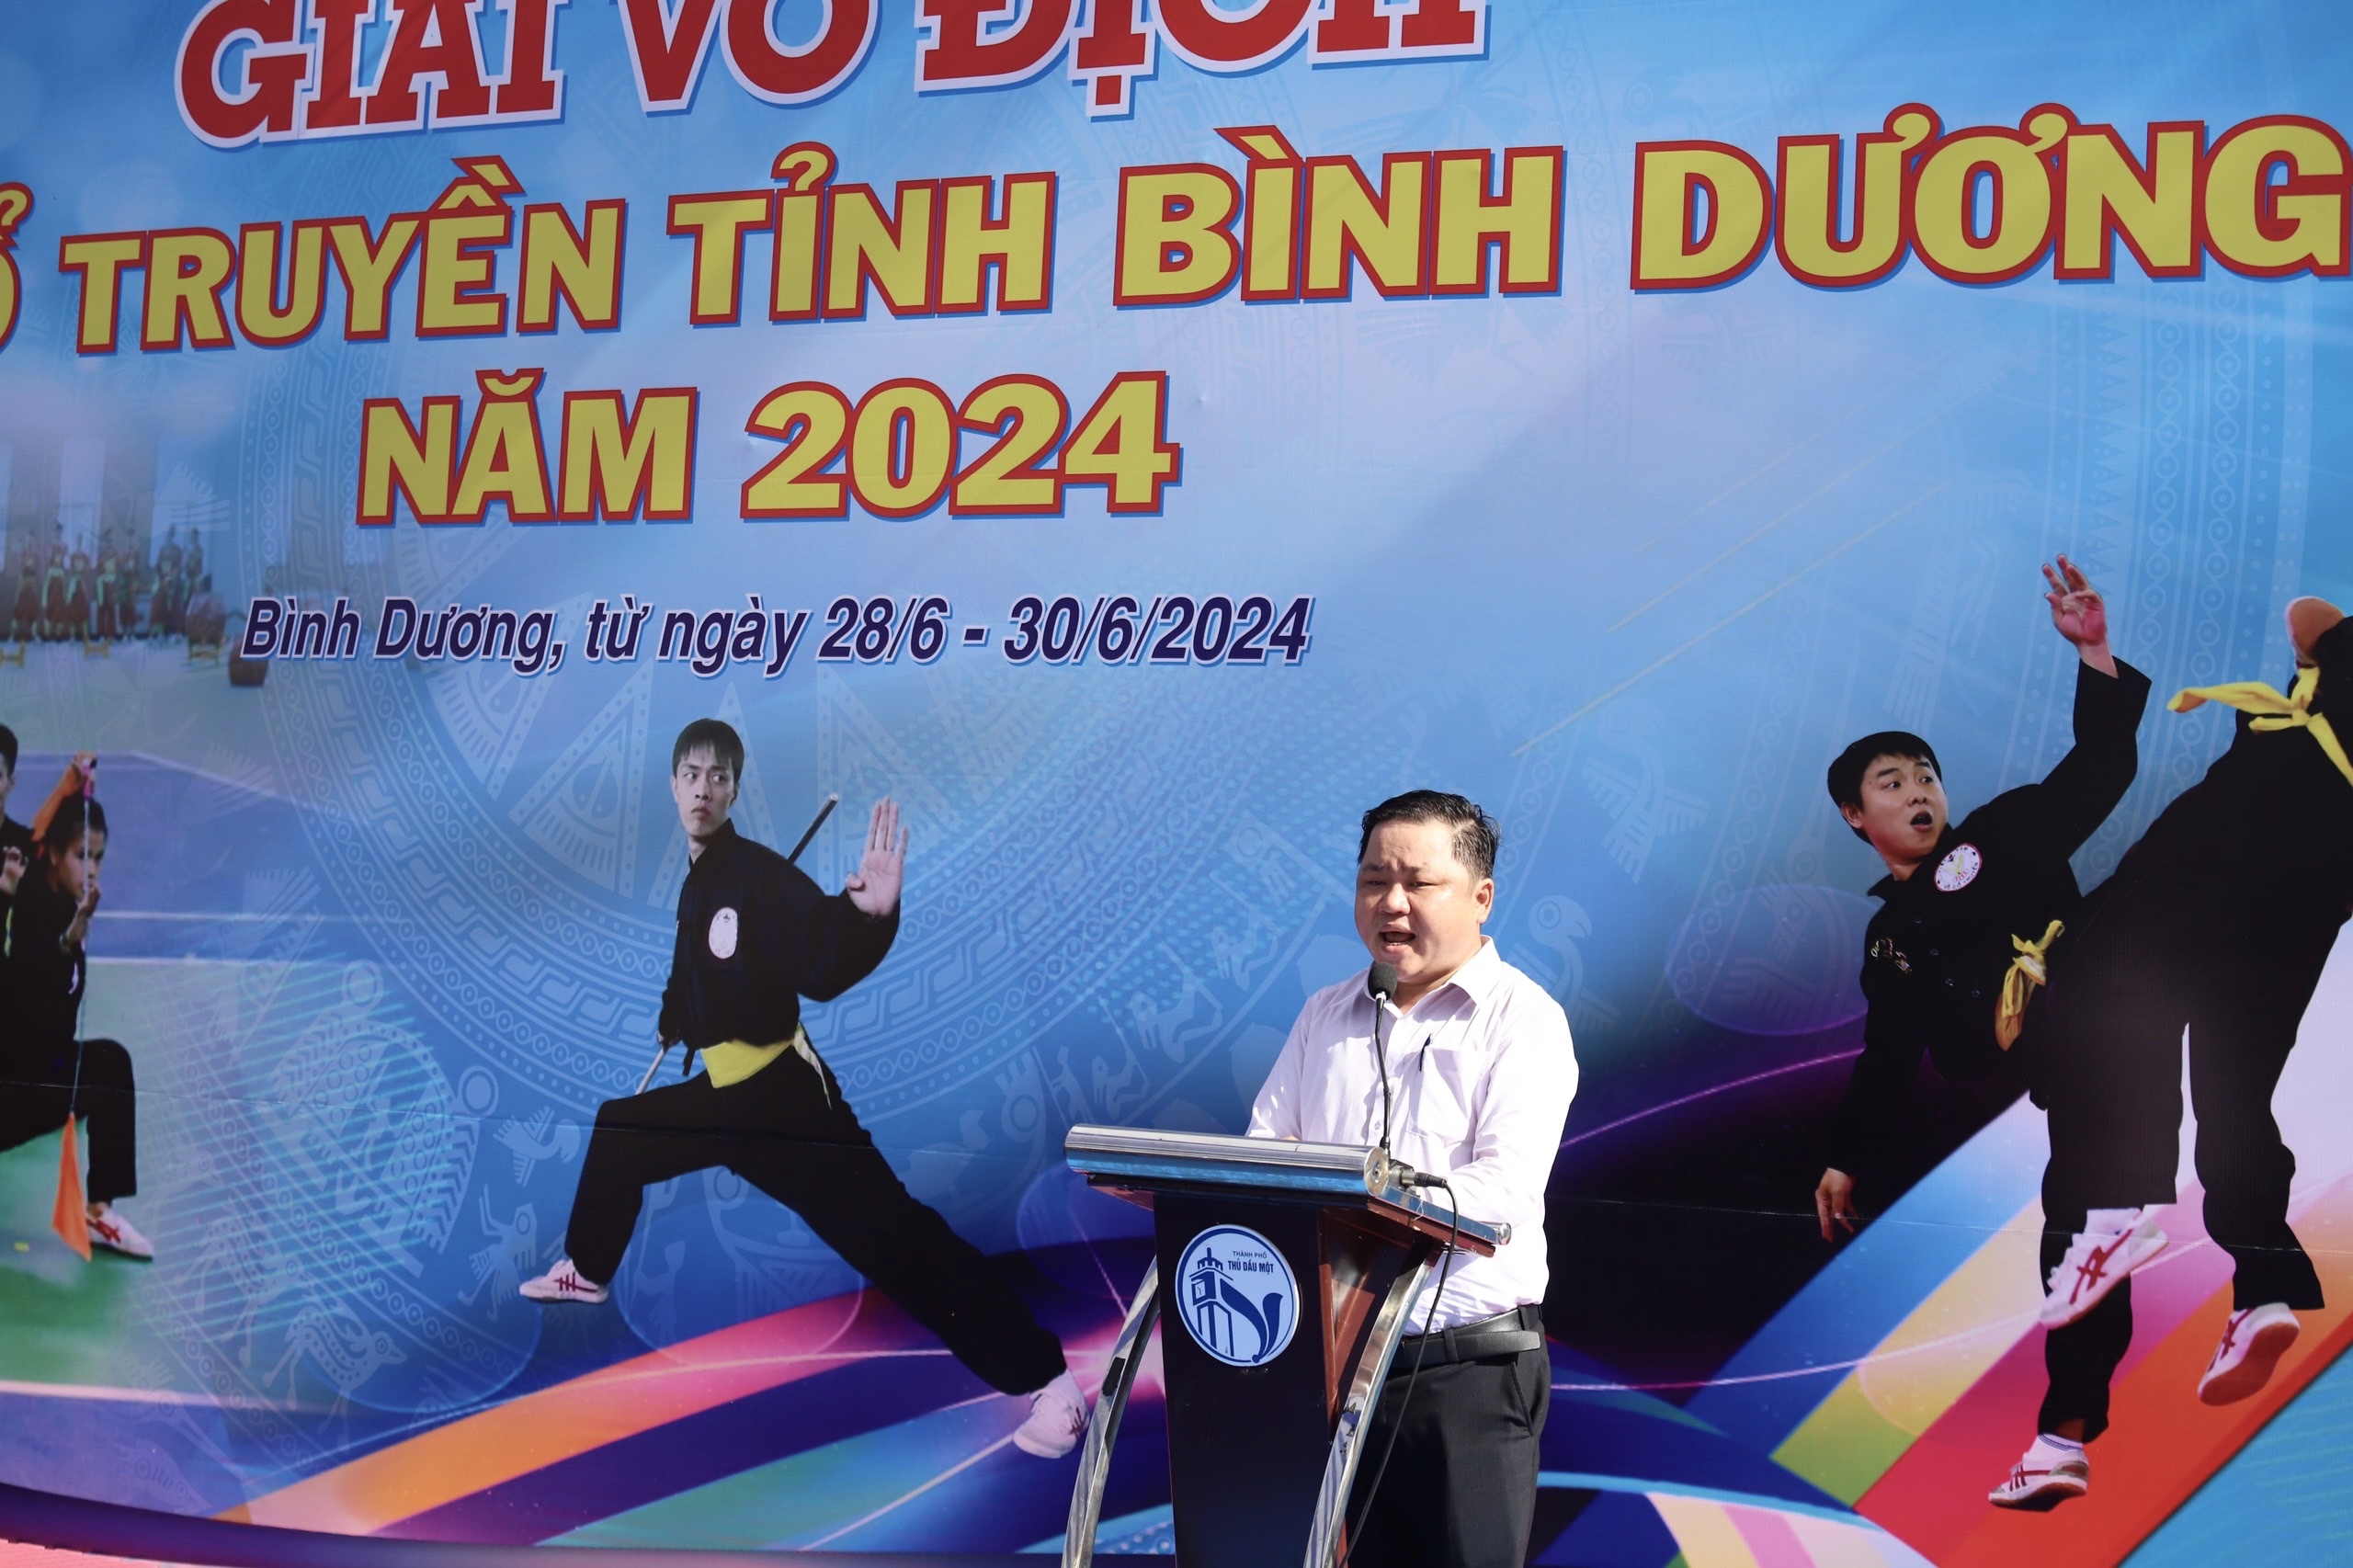 Ông Nguyễn Văn Phương, Giám đốc Trung tâm Văn hóa, Thông tin và Thể thao thành phố Thủ Dầu Một thay mặt Ban Tổ chức giải phát biểu khai mạc